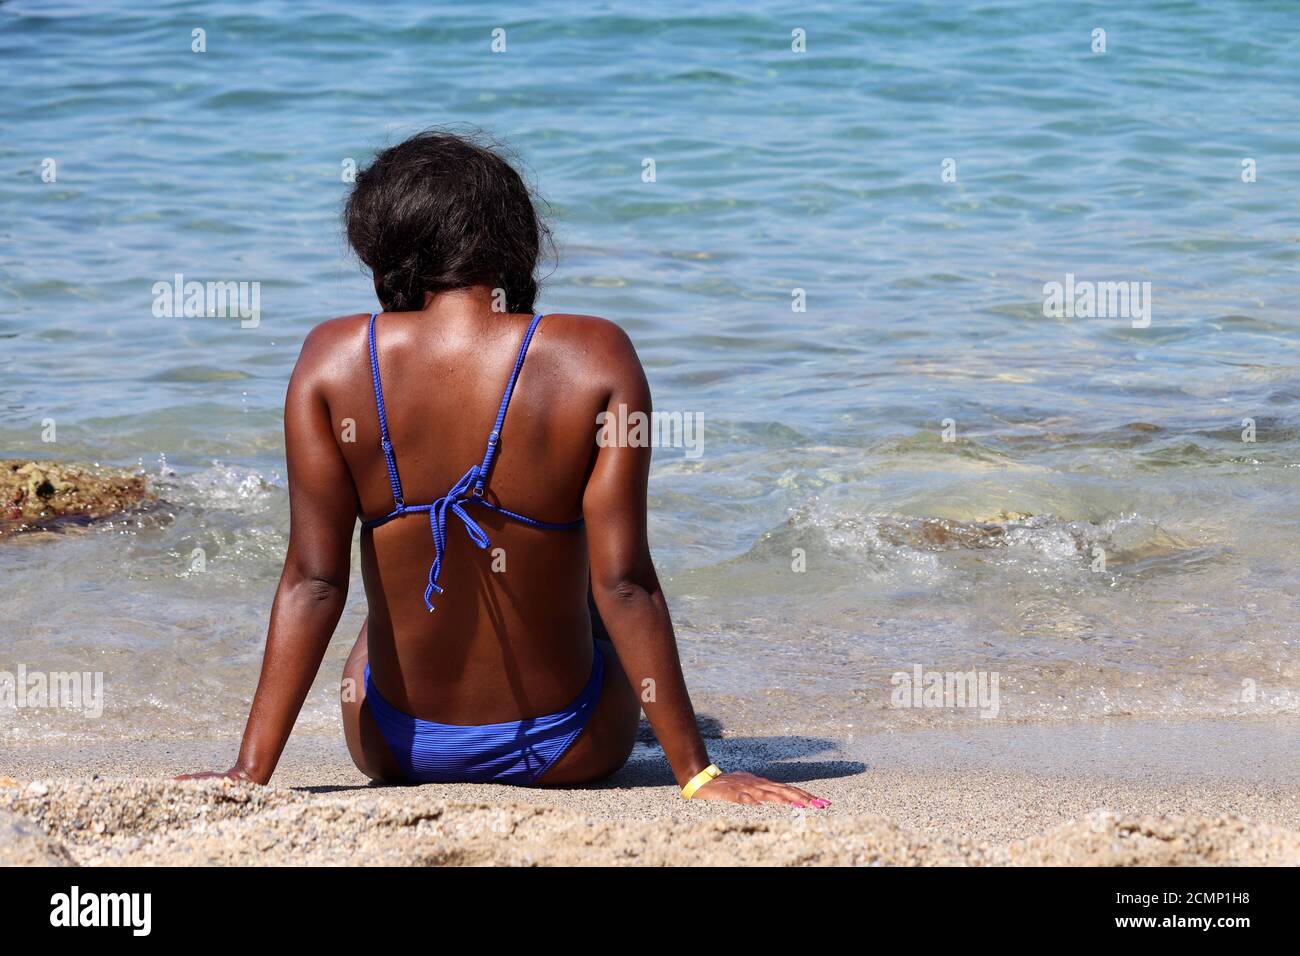 Schwarze Frau Sonnenbaden auf einem Sandstrand sitzen auf Wellen Hintergrund. Urlaub, Entspannung und Freizeit am Meer Stockfoto